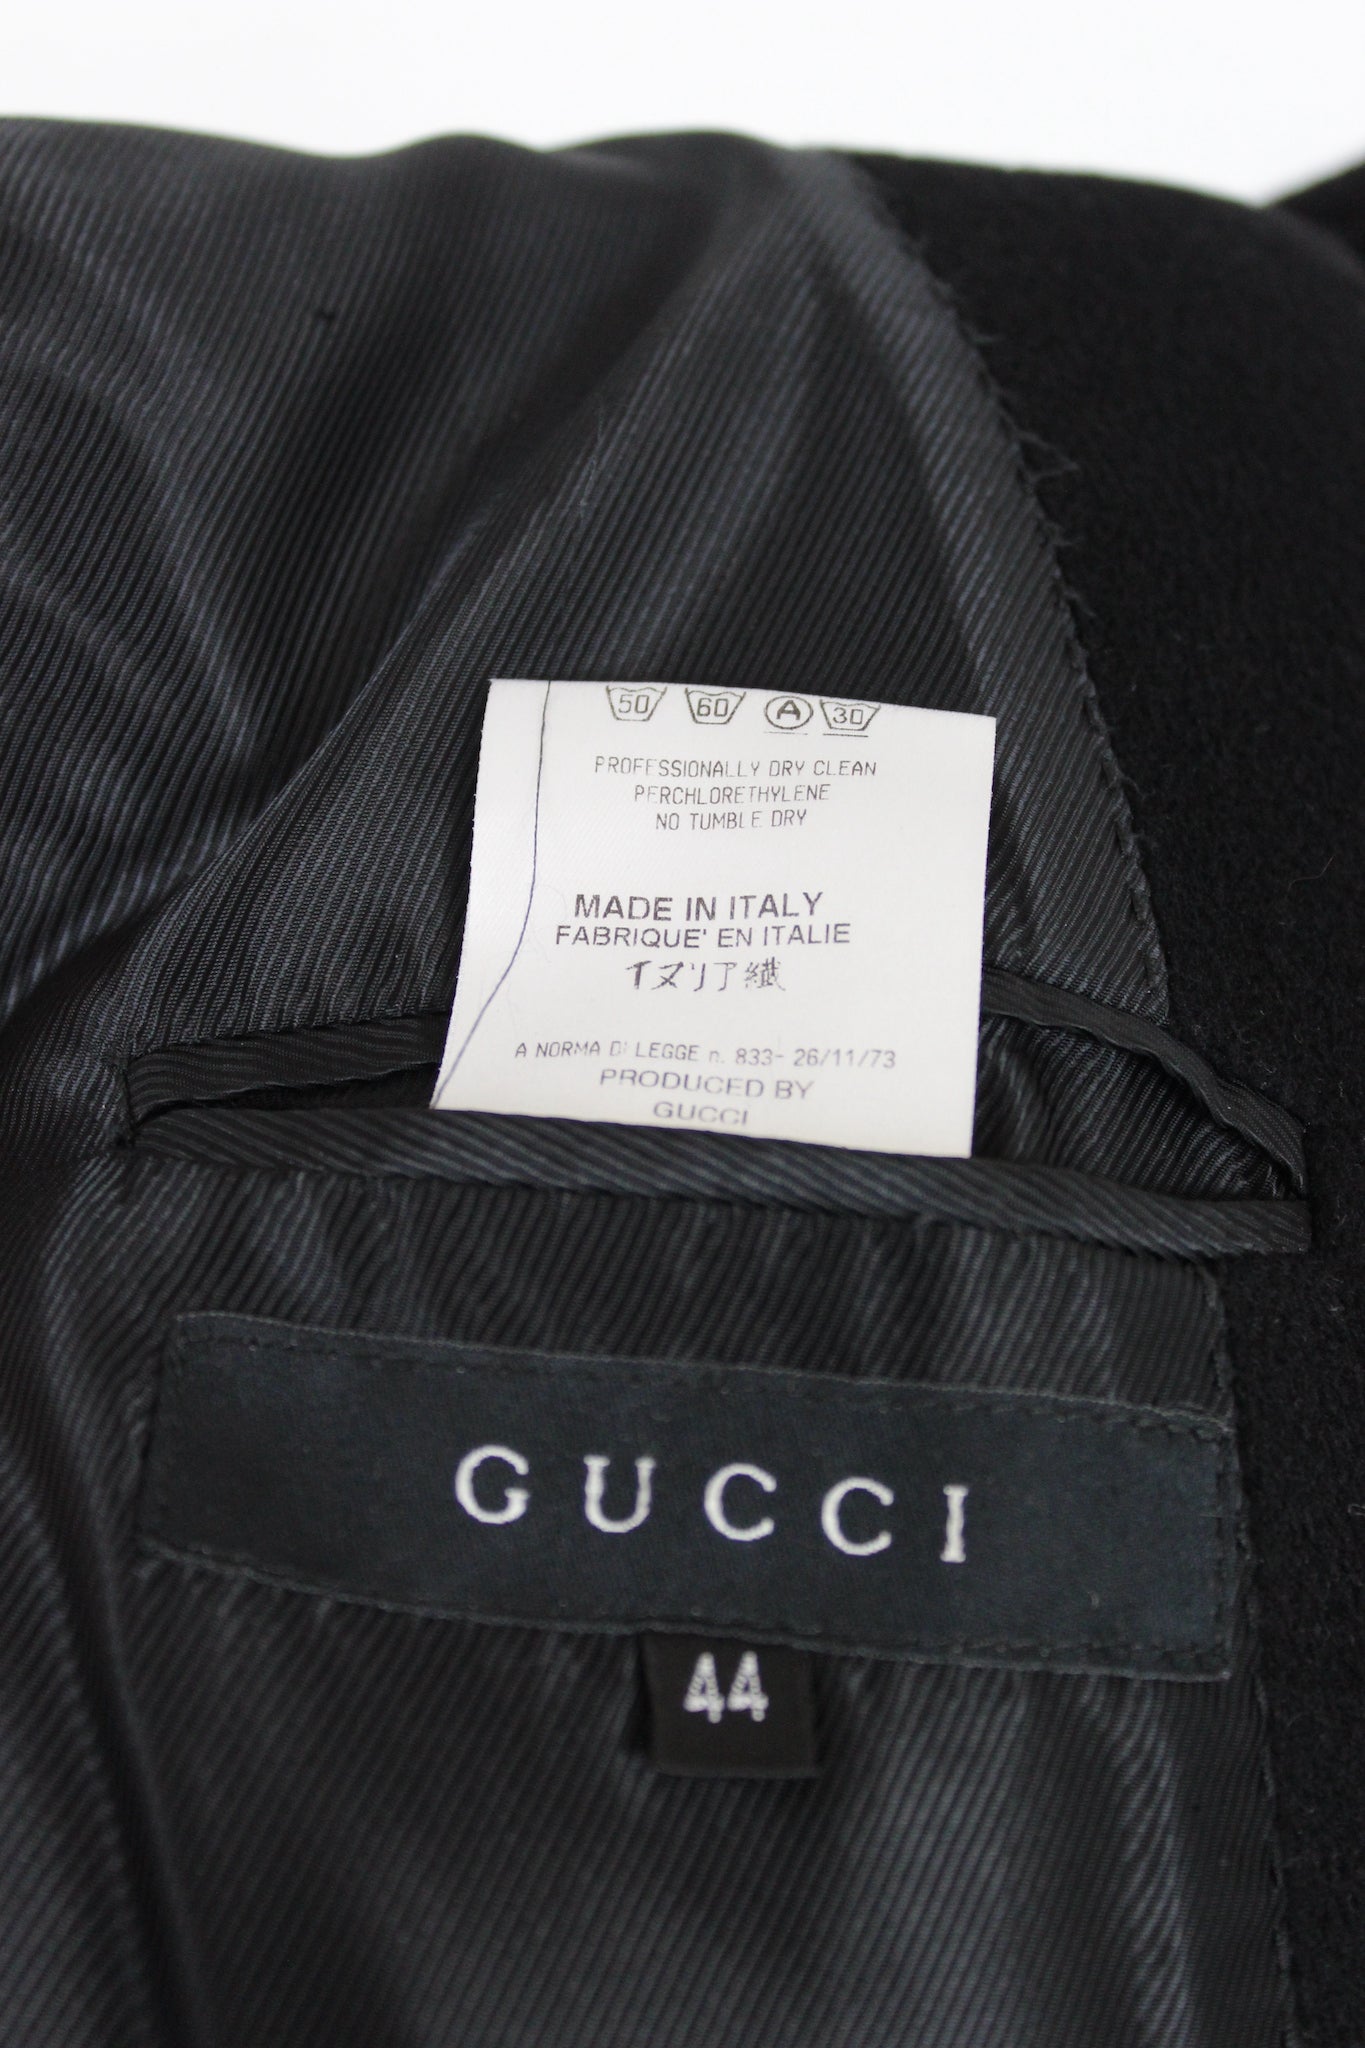 Gucci Black Cashmere Long Coat 2000s